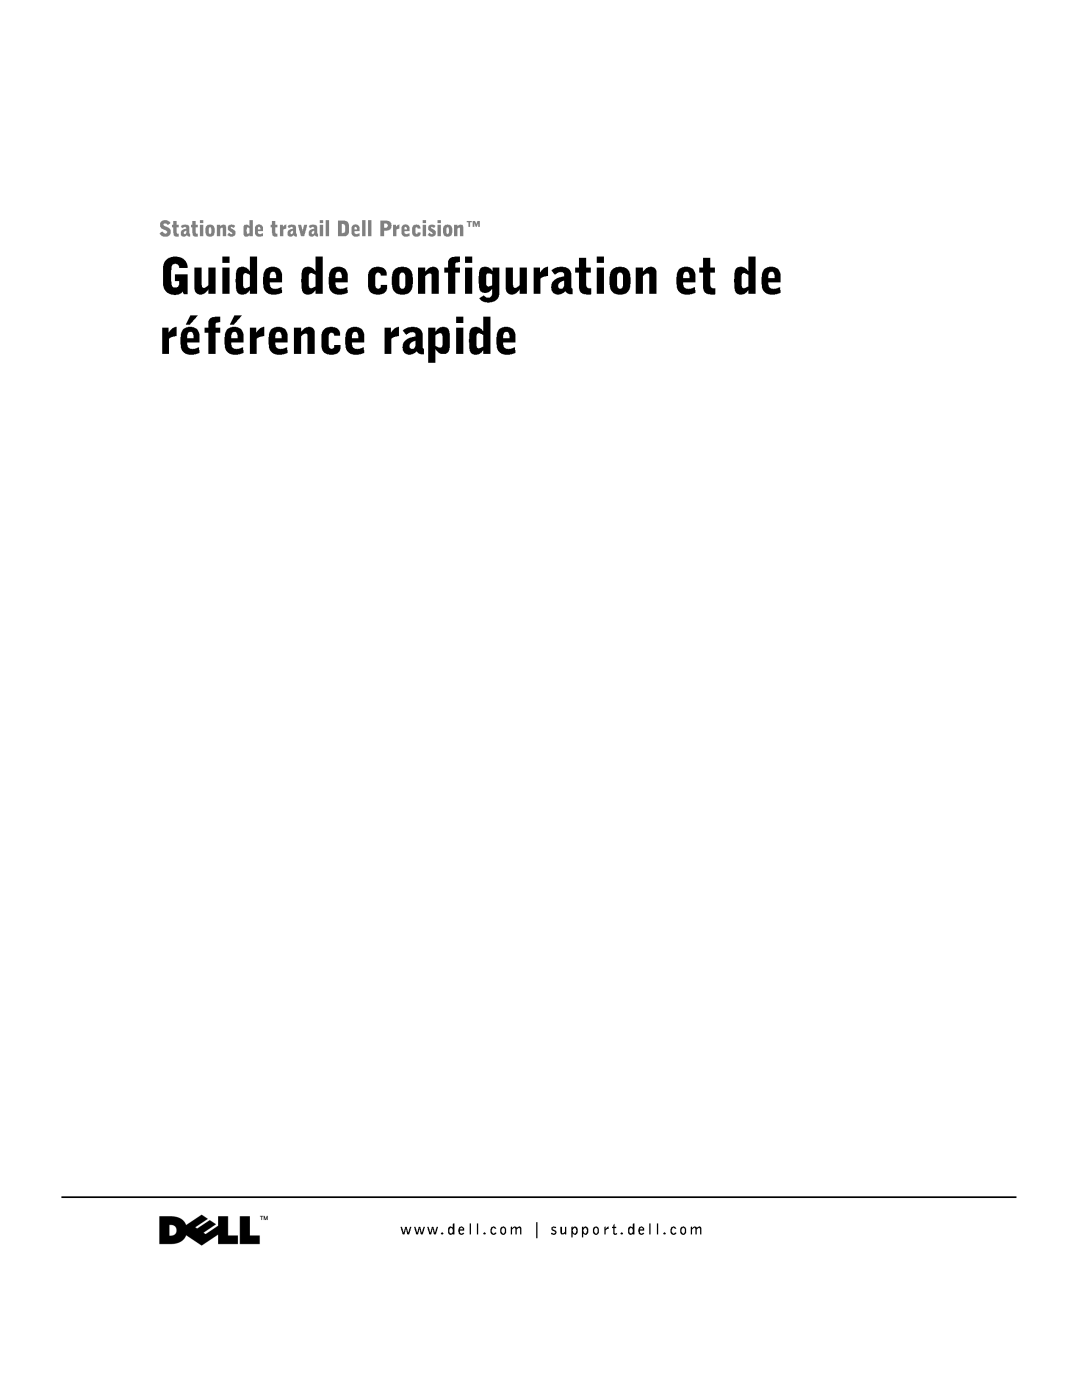 Dell 1G155 manual Guide de configuration et de référence rapide, Stations de travail Dell Precision 